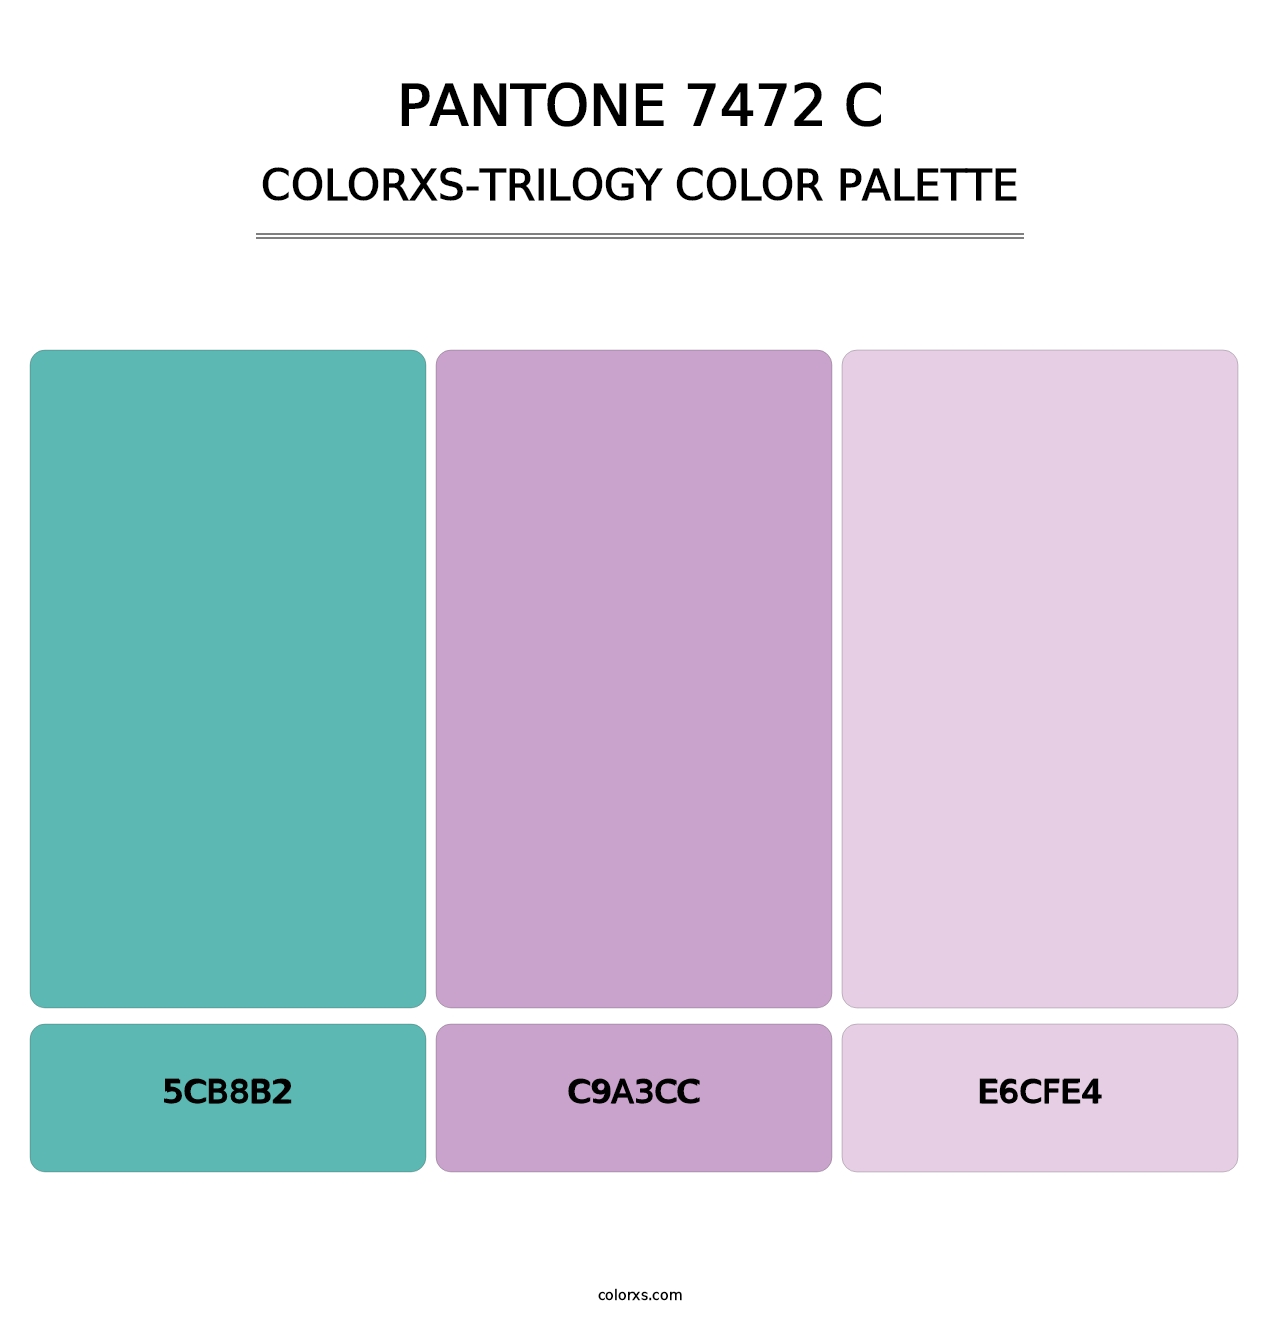 PANTONE 7472 C - Colorxs Trilogy Palette